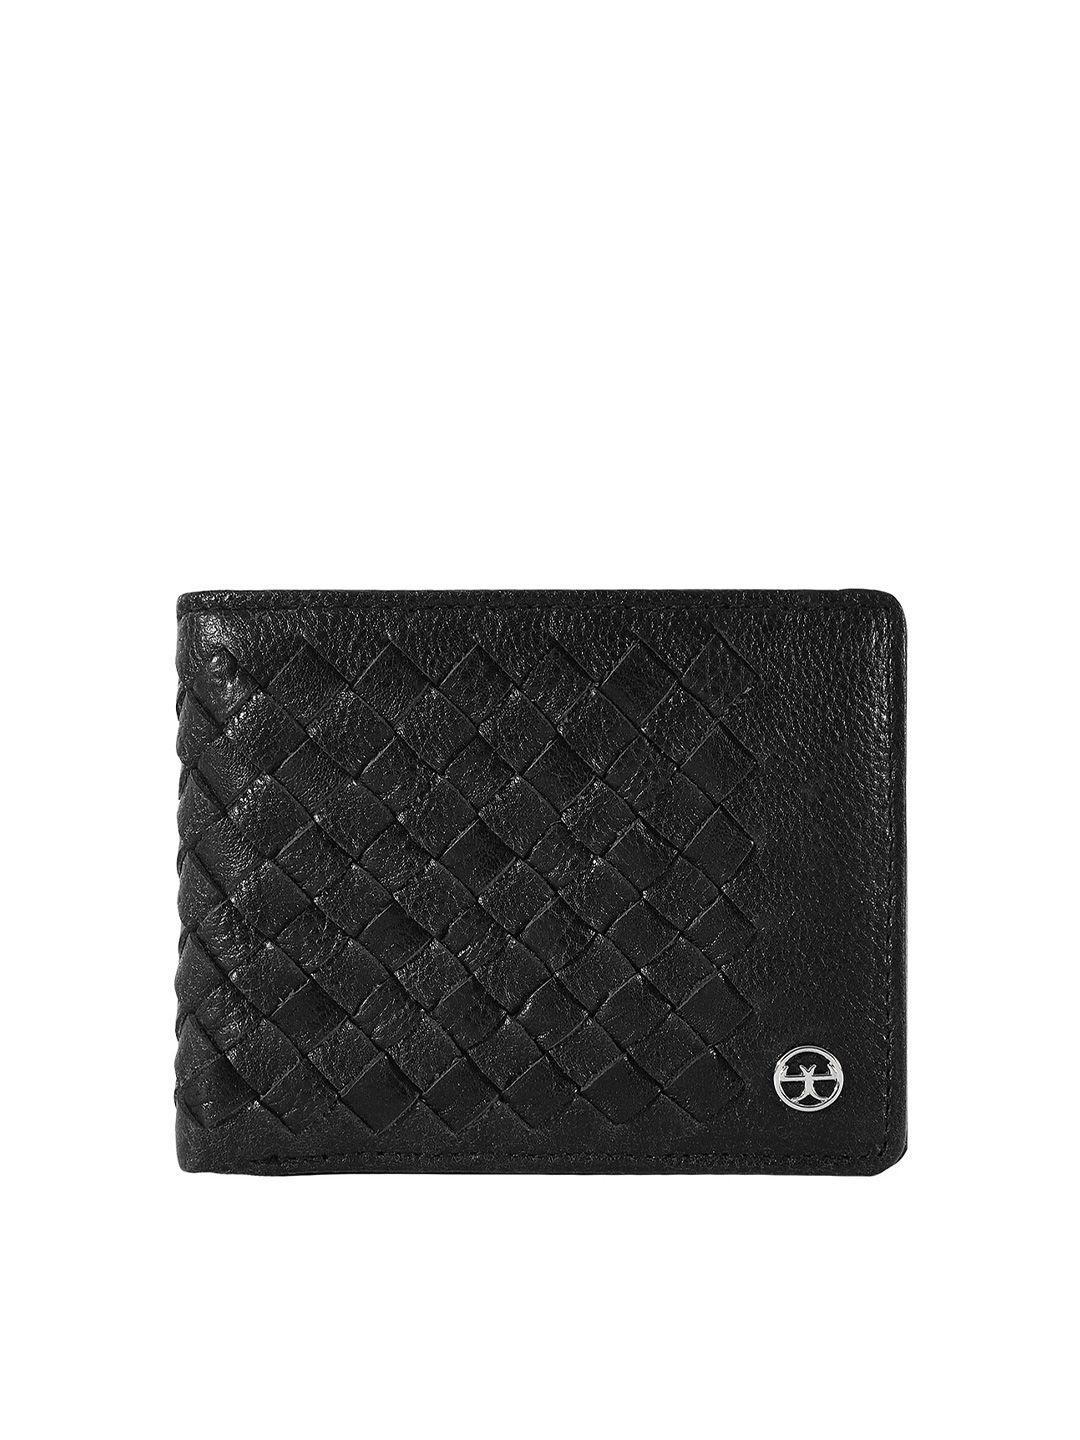 eske-men-leather-two-fold-wallet